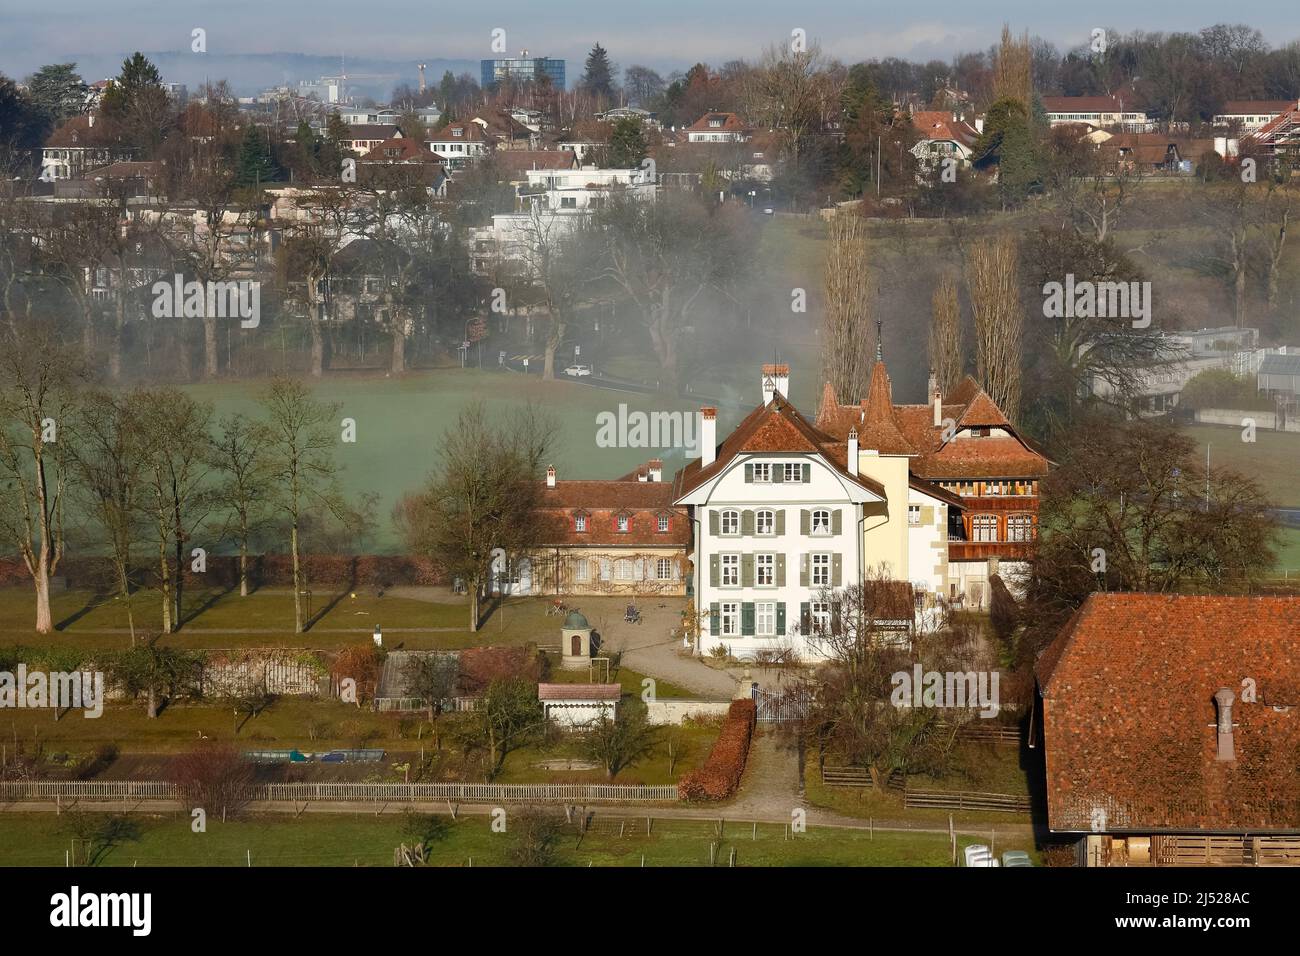 Berna, Suiza - 22 de diciembre de 2015: Castillo Wittigkofen , Palacio durante un día foggy, la primera vez documentada en el siglo 13th, situado en Murife Foto de stock